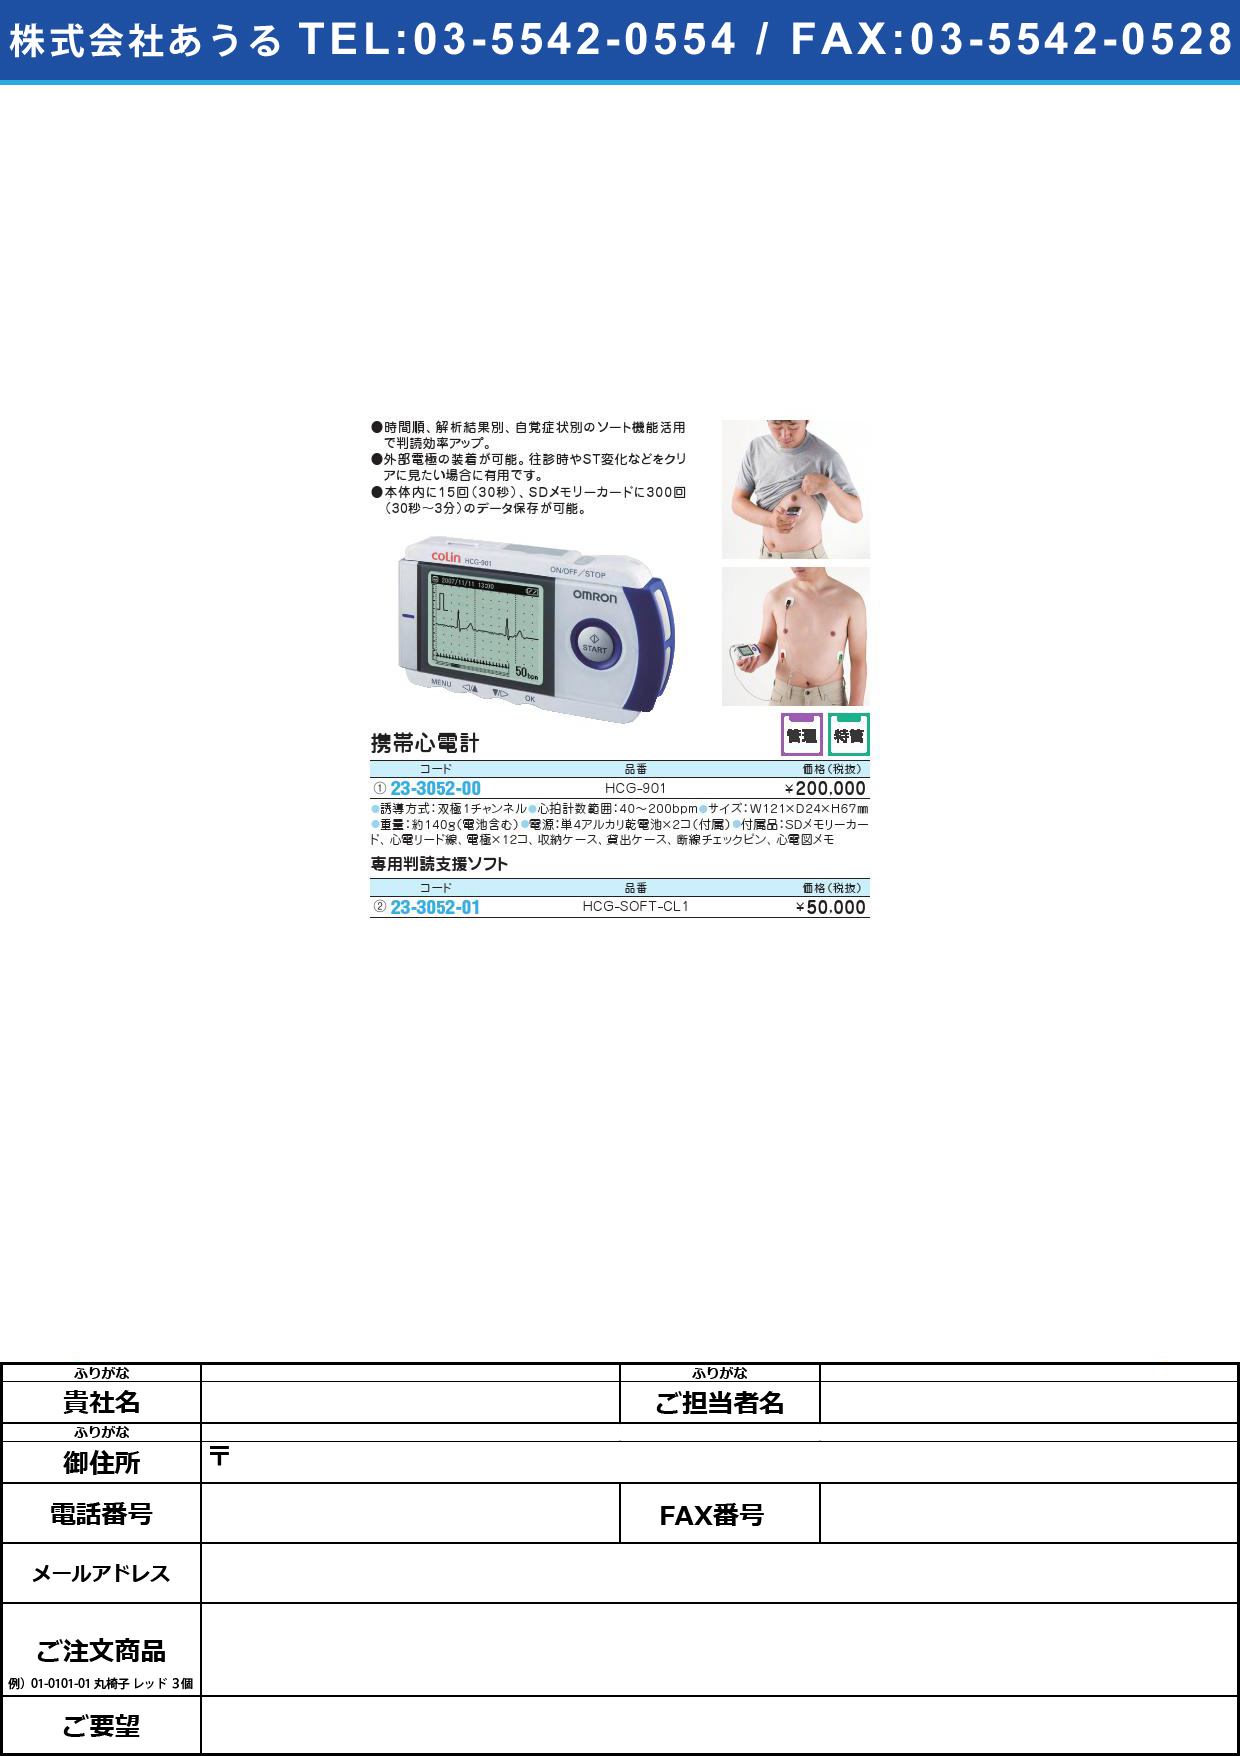 携帯心電計 ｹｲﾀｲｼﾝﾃﾞﾝｹｲ HCG-901【1台単位】(23-3052-00)